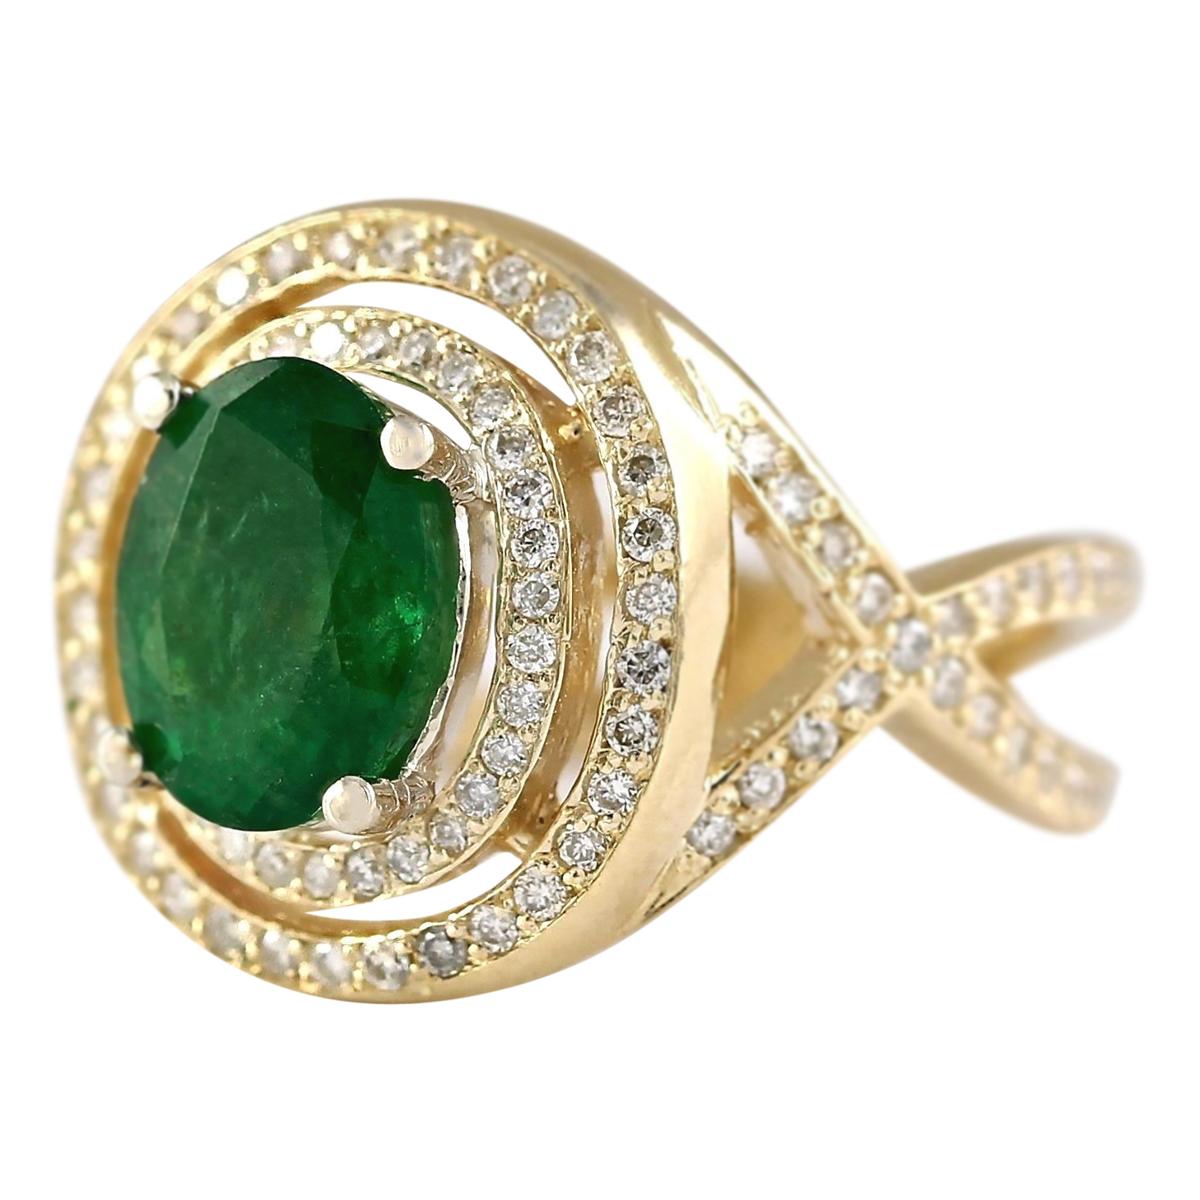 3.63 Carat Natural Emerald 14 Karat Yellow Gold Diamond Ring
Estampillé : Or jaune 14K
Poids total de l'anneau : 9,2 grammes
Le poids de l'émeraude Nature est de 2,38 carats (Dimensions : 9.00x7.00 mm)
Couleur : Vert
Le poids total des diamants